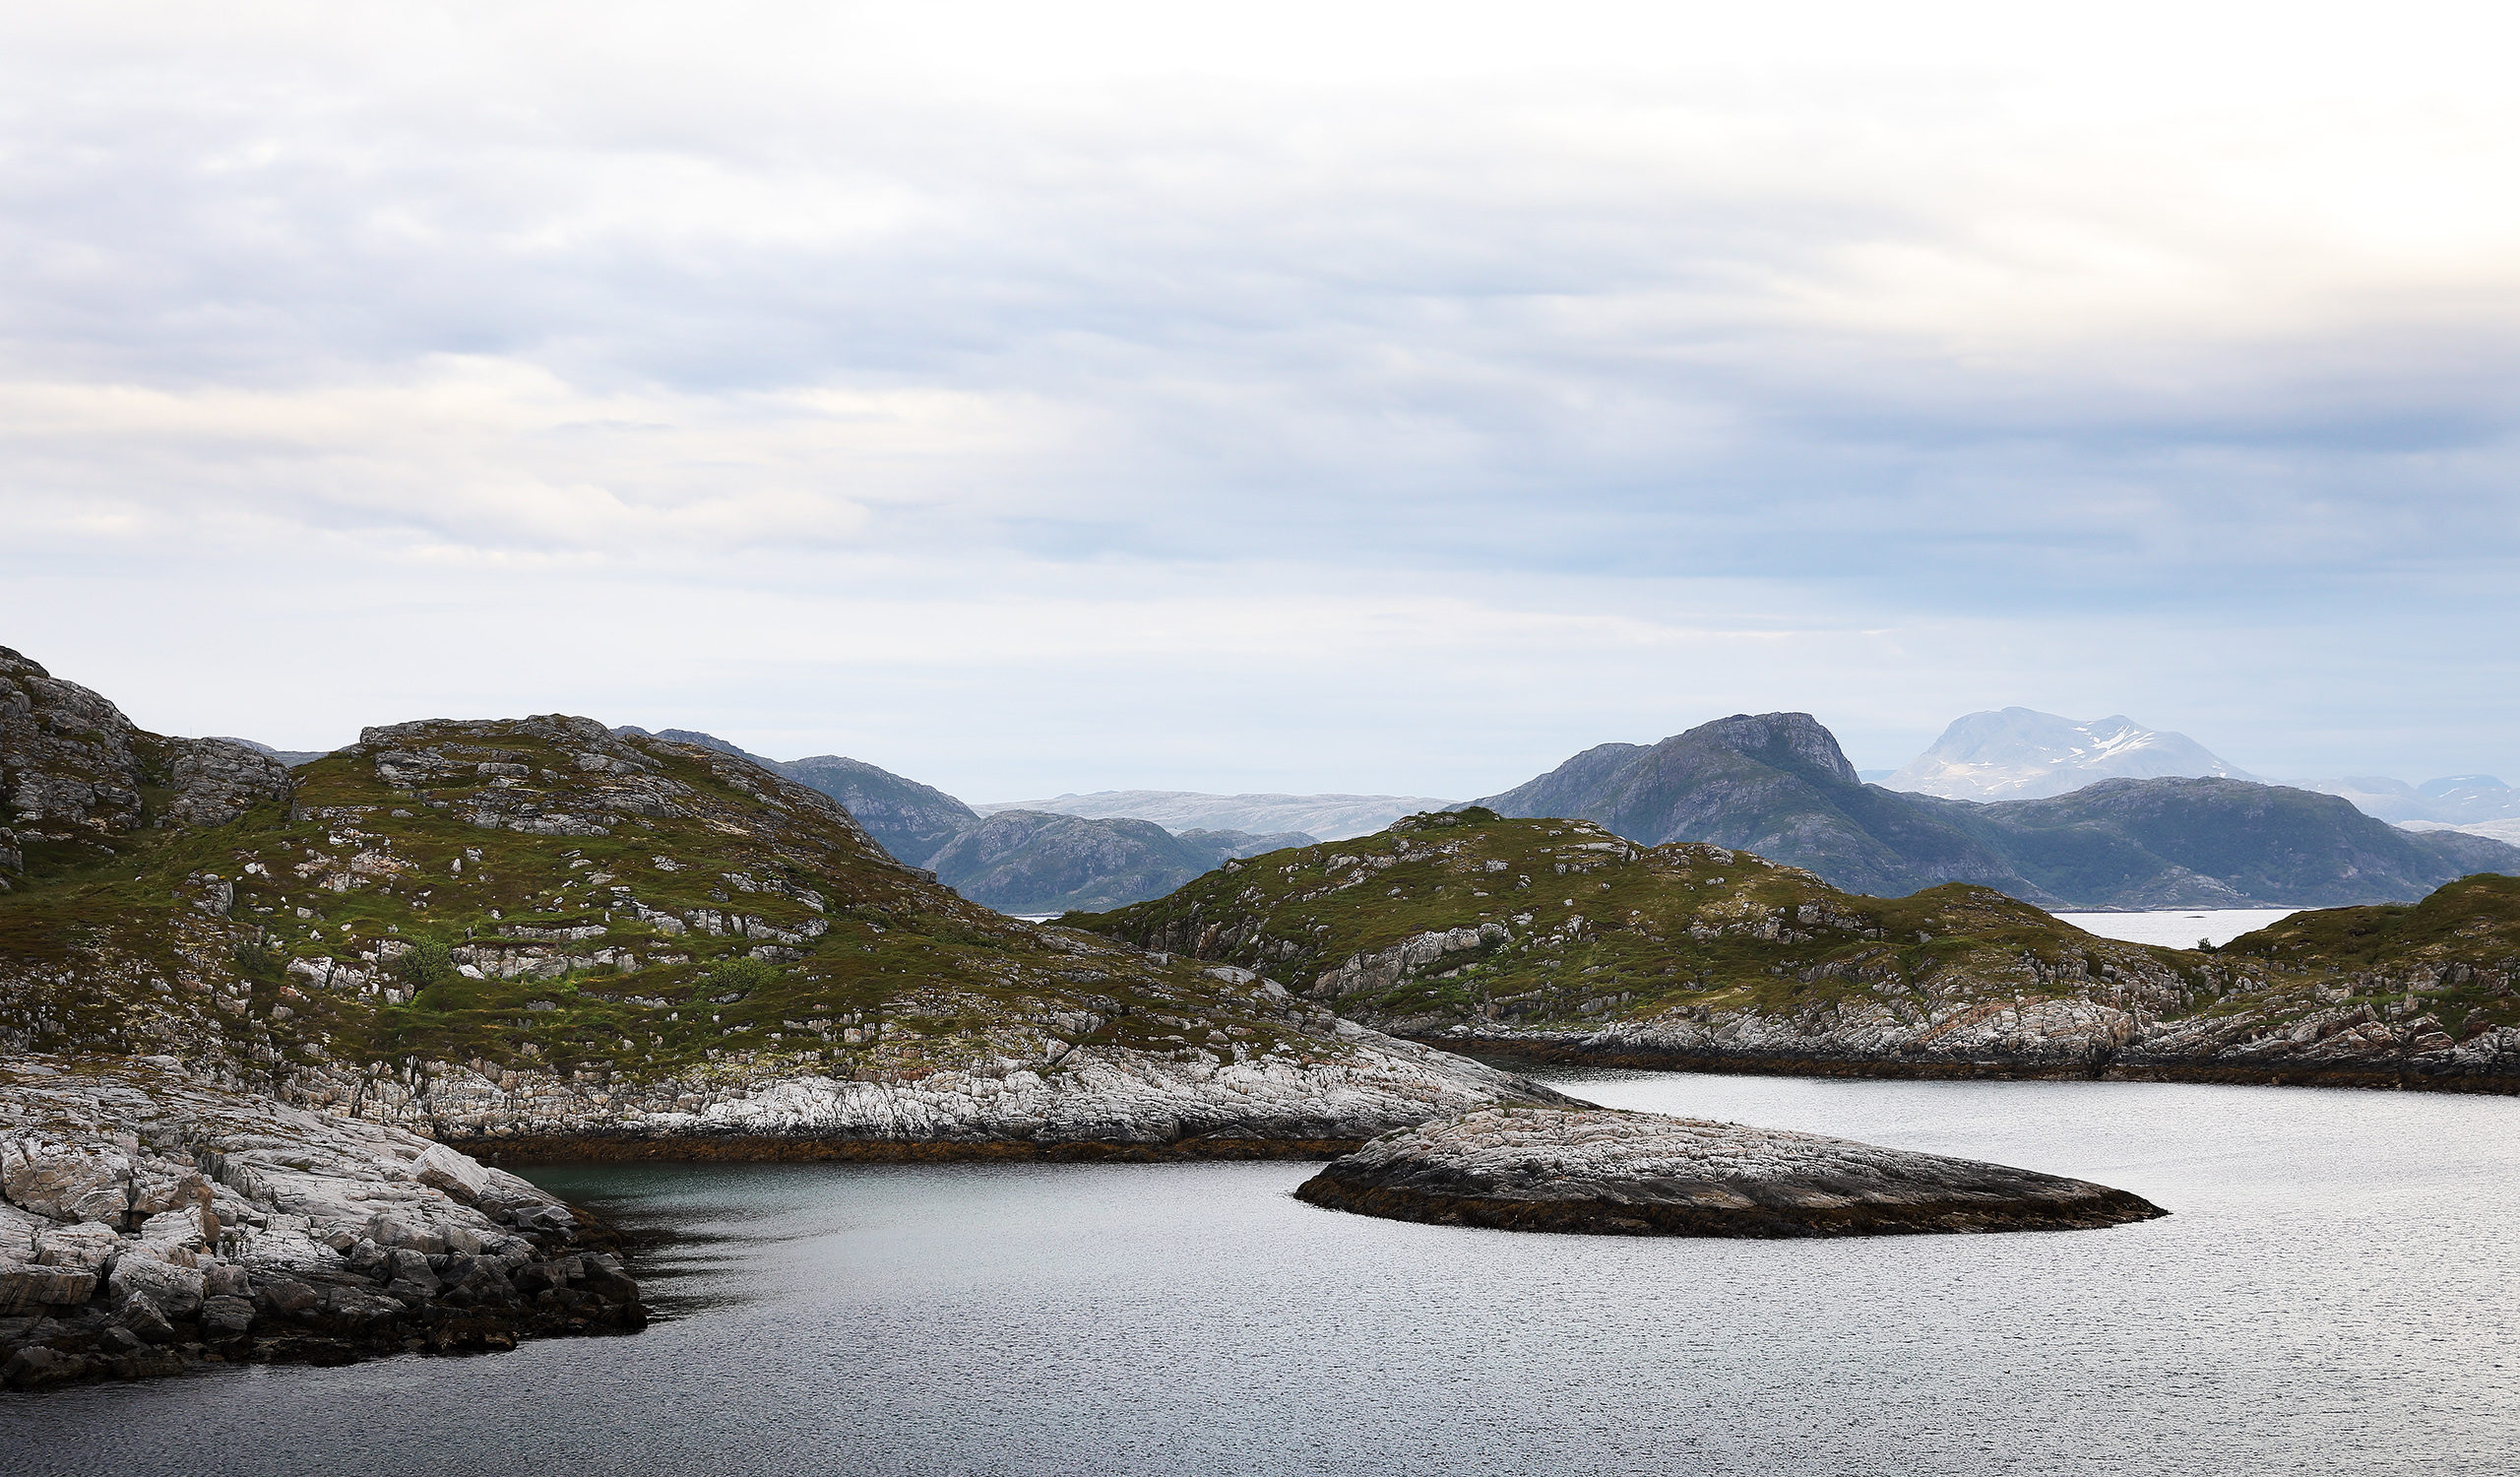 Abenteuerreise mit SUP's unter der Mitternachtssonne auf den Inseln Rebbenesøya, Grøtøya und Nordkvaløya in einer Region mit reiner unberührter Natur und sehr wenig Zivilisation. Sie reisen mit einem relativ neuen Transportmittel unter dem einzigartigen Licht der Mitternachtssonne und versuchen, Bilder von einem der herausragendsten Orte der Erde zu erforschen und mit anderen zu teilen. Das mystische Wetter der norwegischen Arktis bietet ein emotionales Ambiente für jeden, der bereit ist, sich in die Ferne zu wagen. Planetvisible hat eine 14-tägige Reise in die nördliche norwegische Arktis unternommen, um die Fähigkeit der Bretter zu testen, den Wellengang des offenen Ozeans mit mehr als 130 kg an Bord zu überstehen. Fotografie von Justin Hession Fotografie